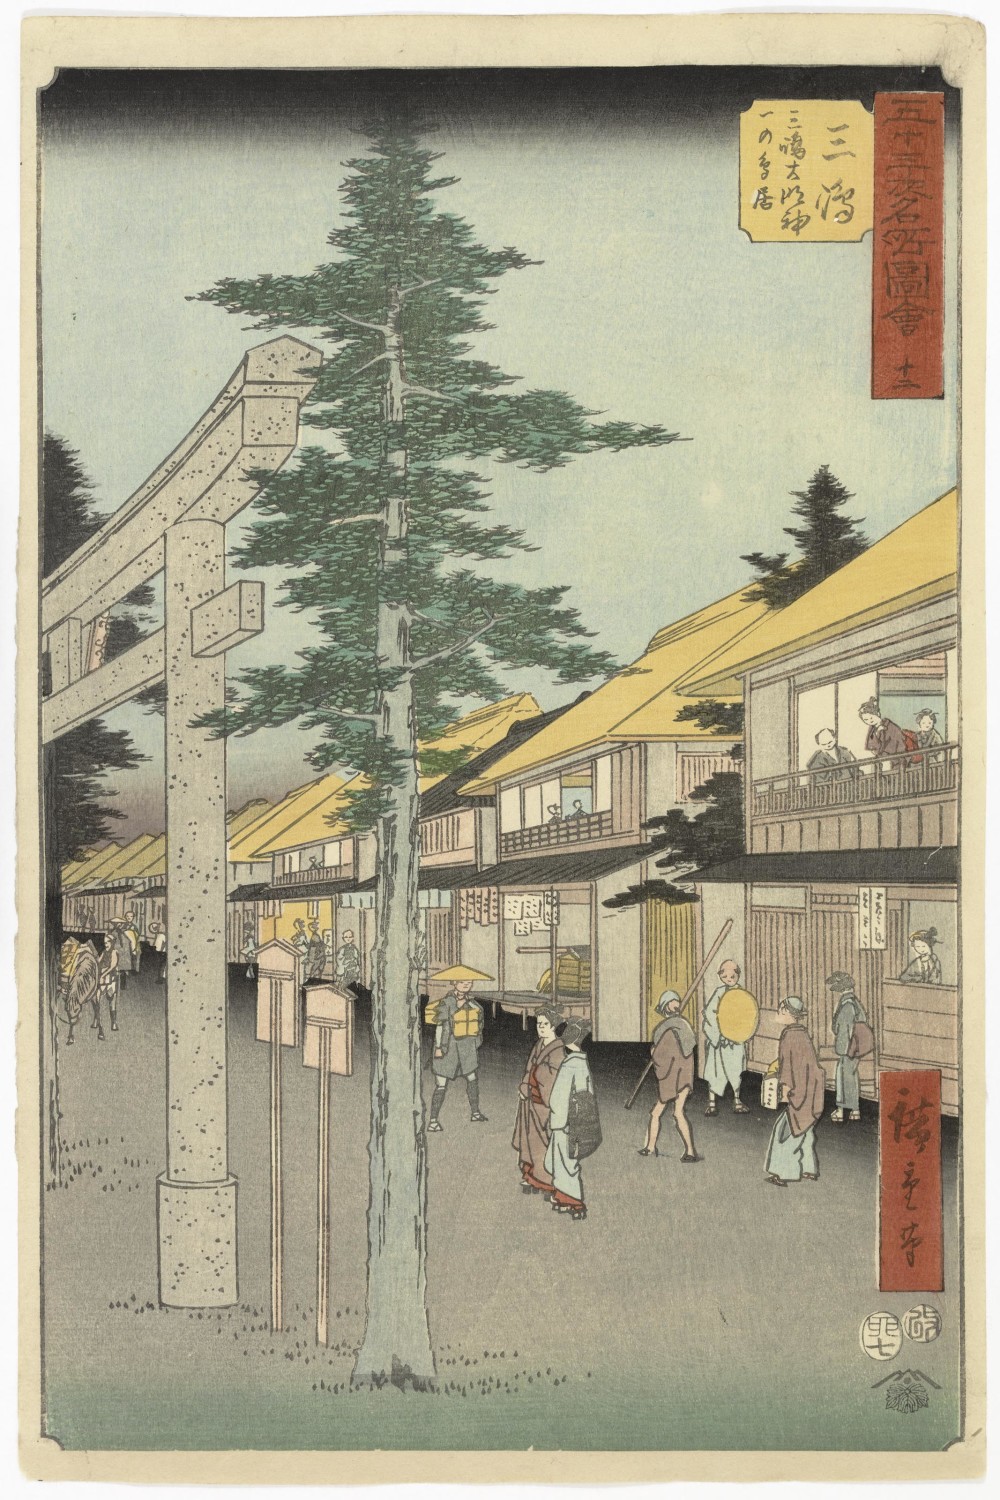 Ando Hiroshige, Mishima from Upright Tokaido